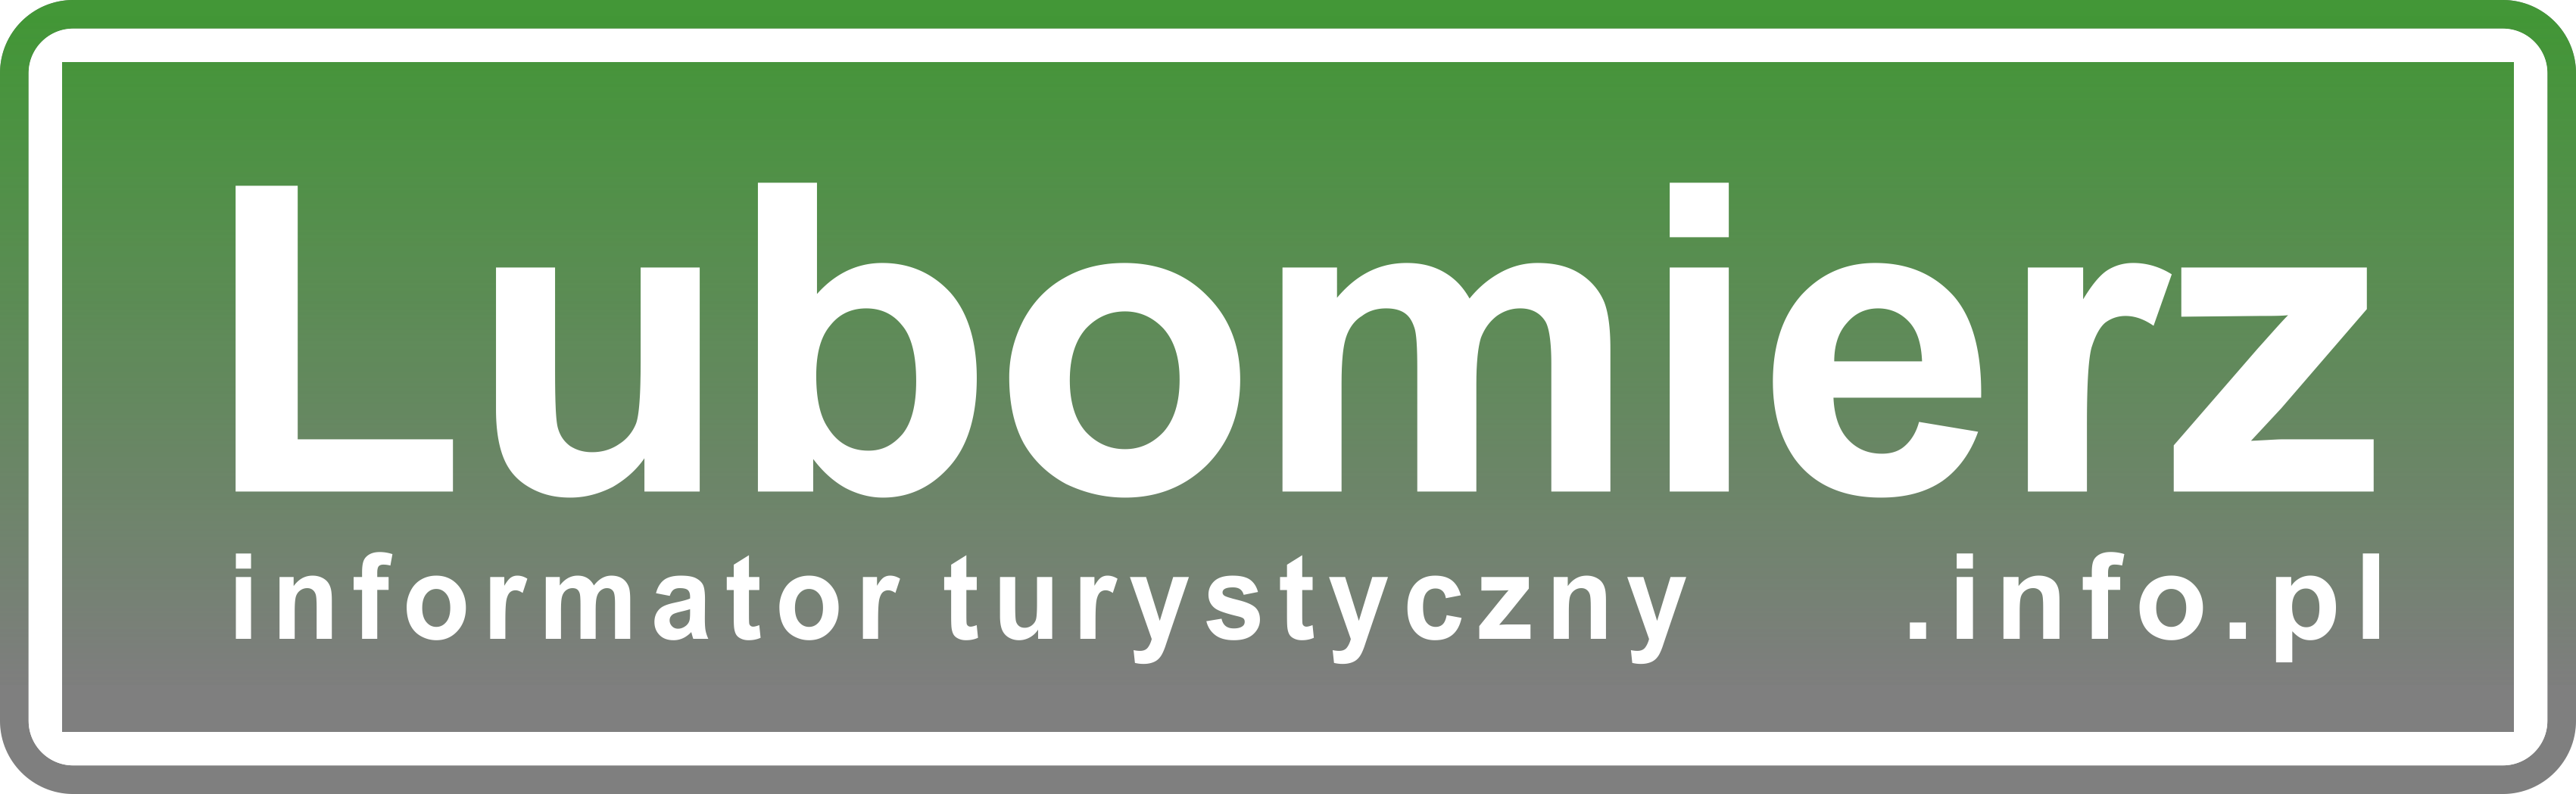 Lubomierz.info.pl